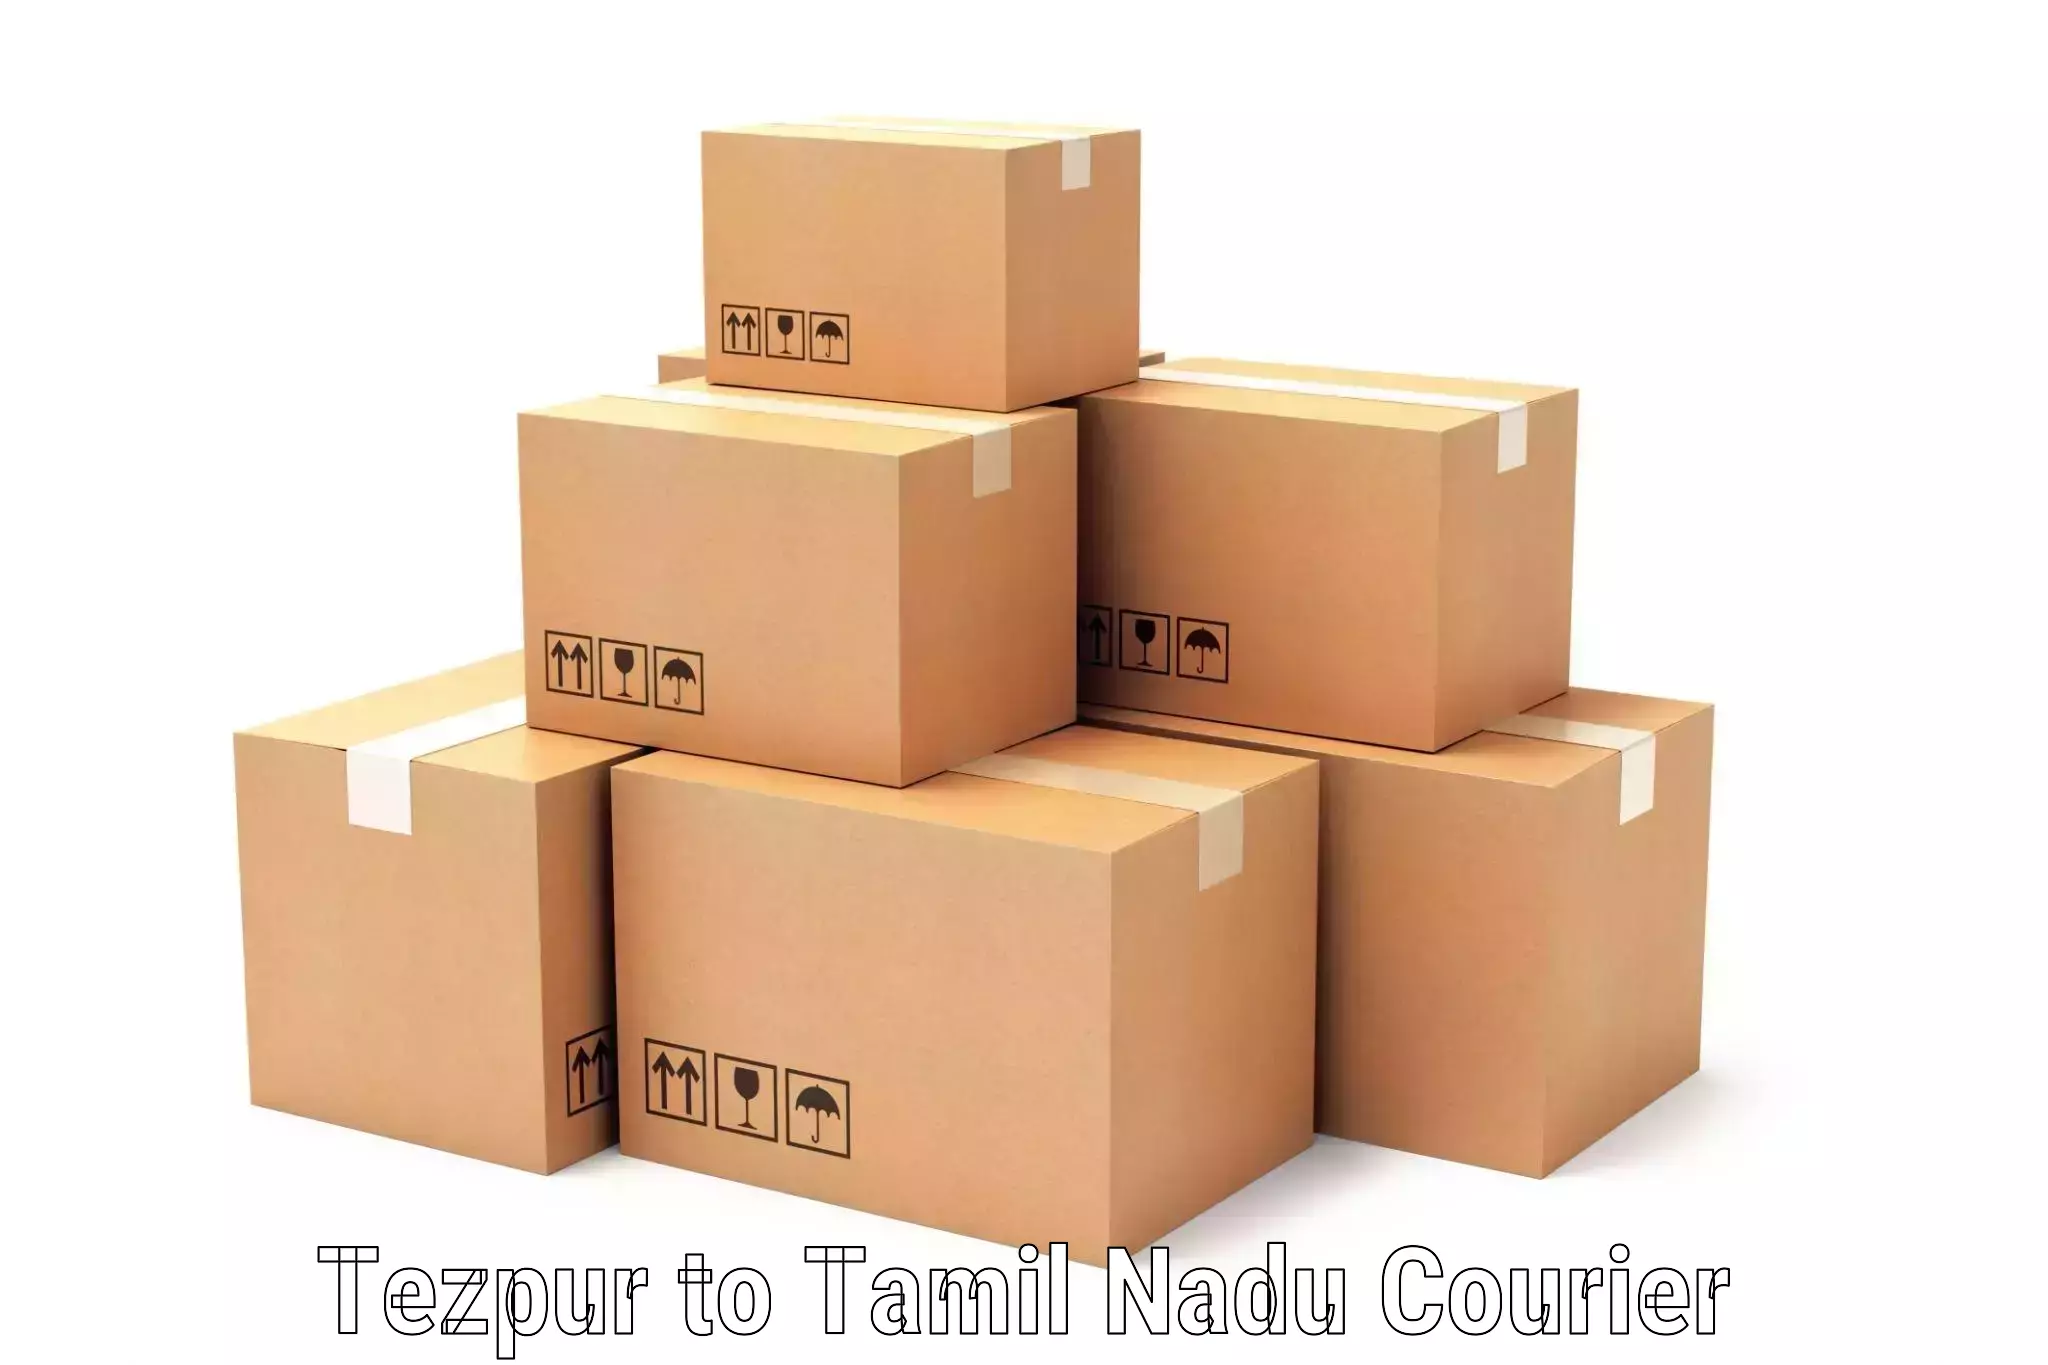 Global logistics network Tezpur to Sholinghur